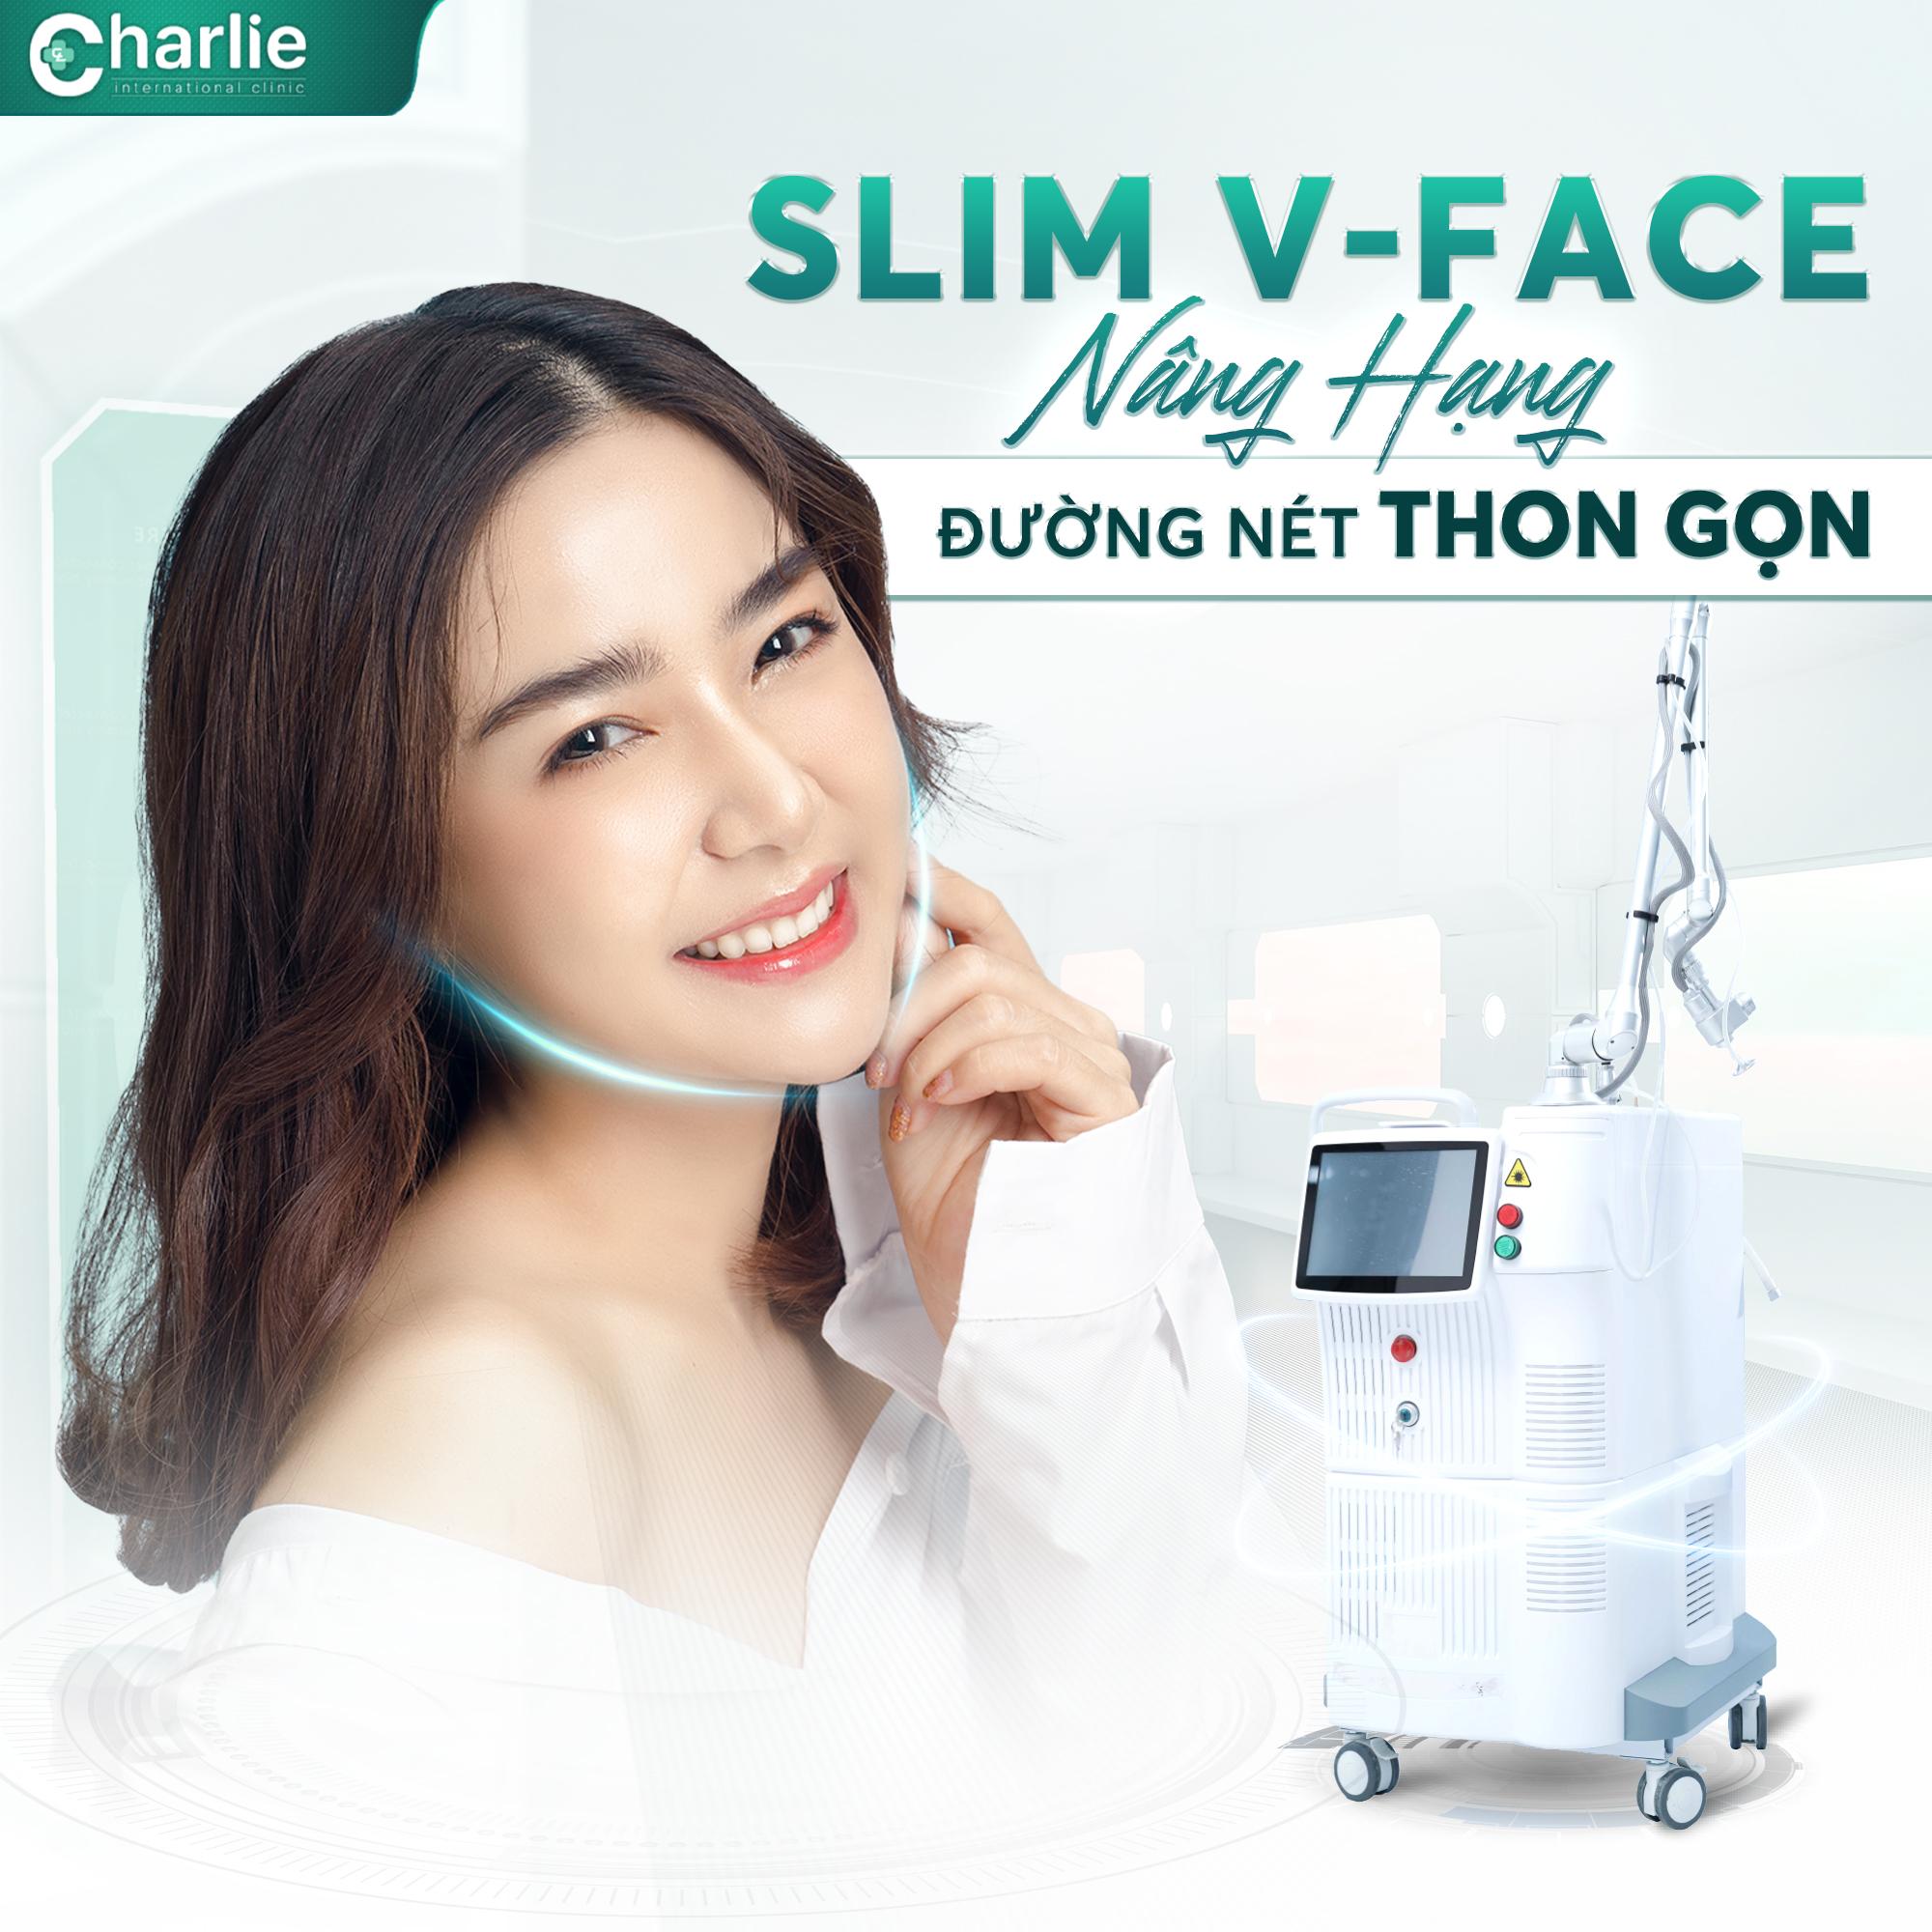 Phòng khám Charlie tiên phong công nghệ Thon gọn hàm Slim V-Face không cần phẫu thuật- Ảnh 1.